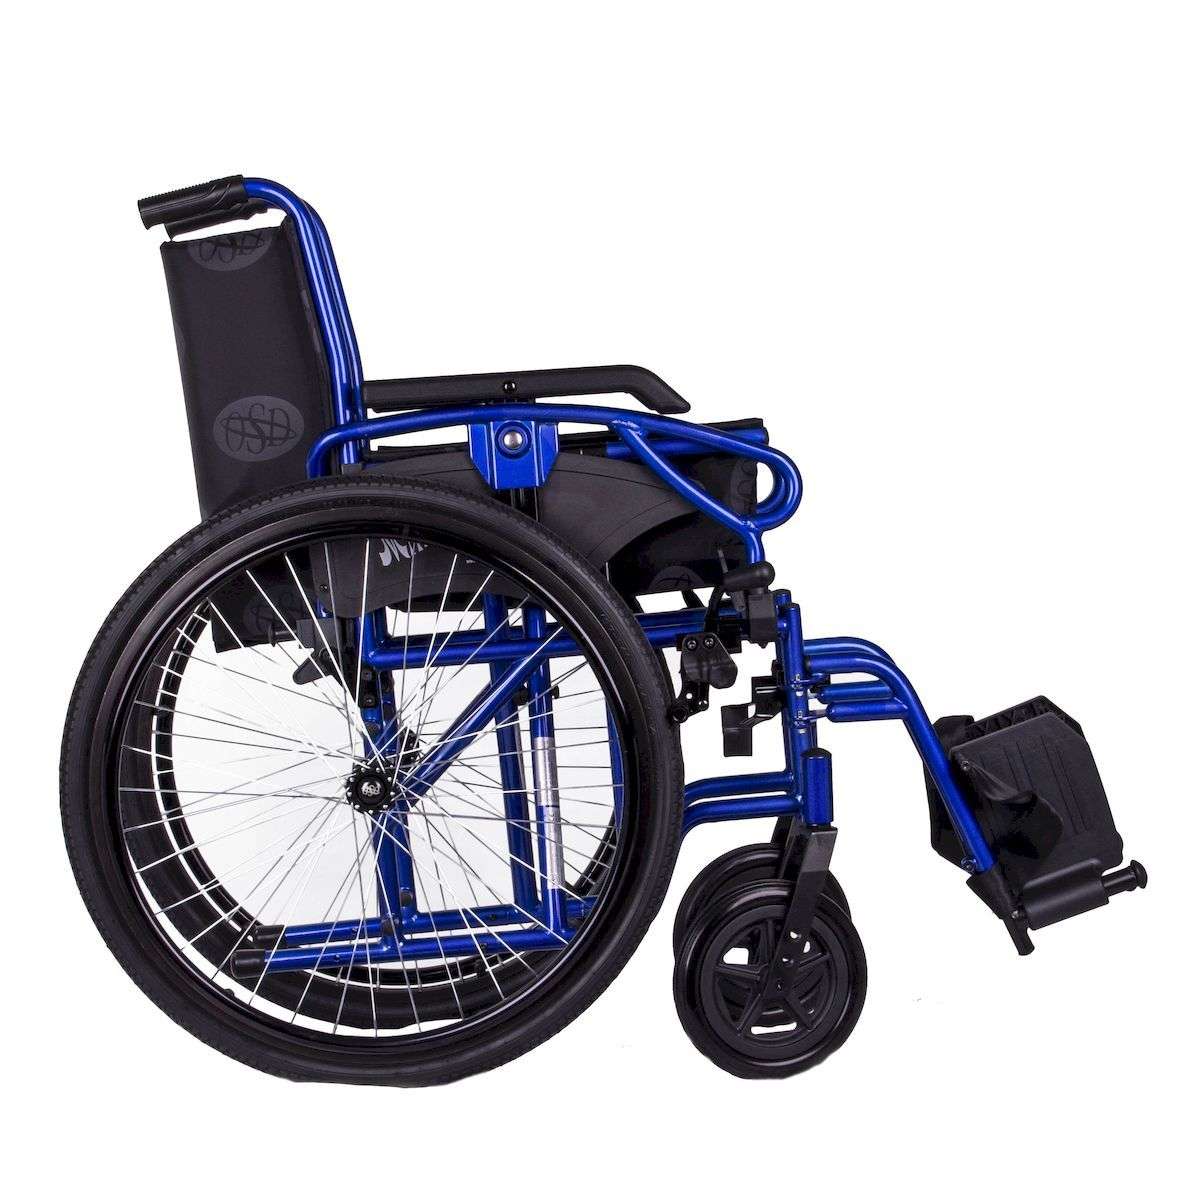 Стандартная инвалидная коляска OSD Millenium 3 Blue